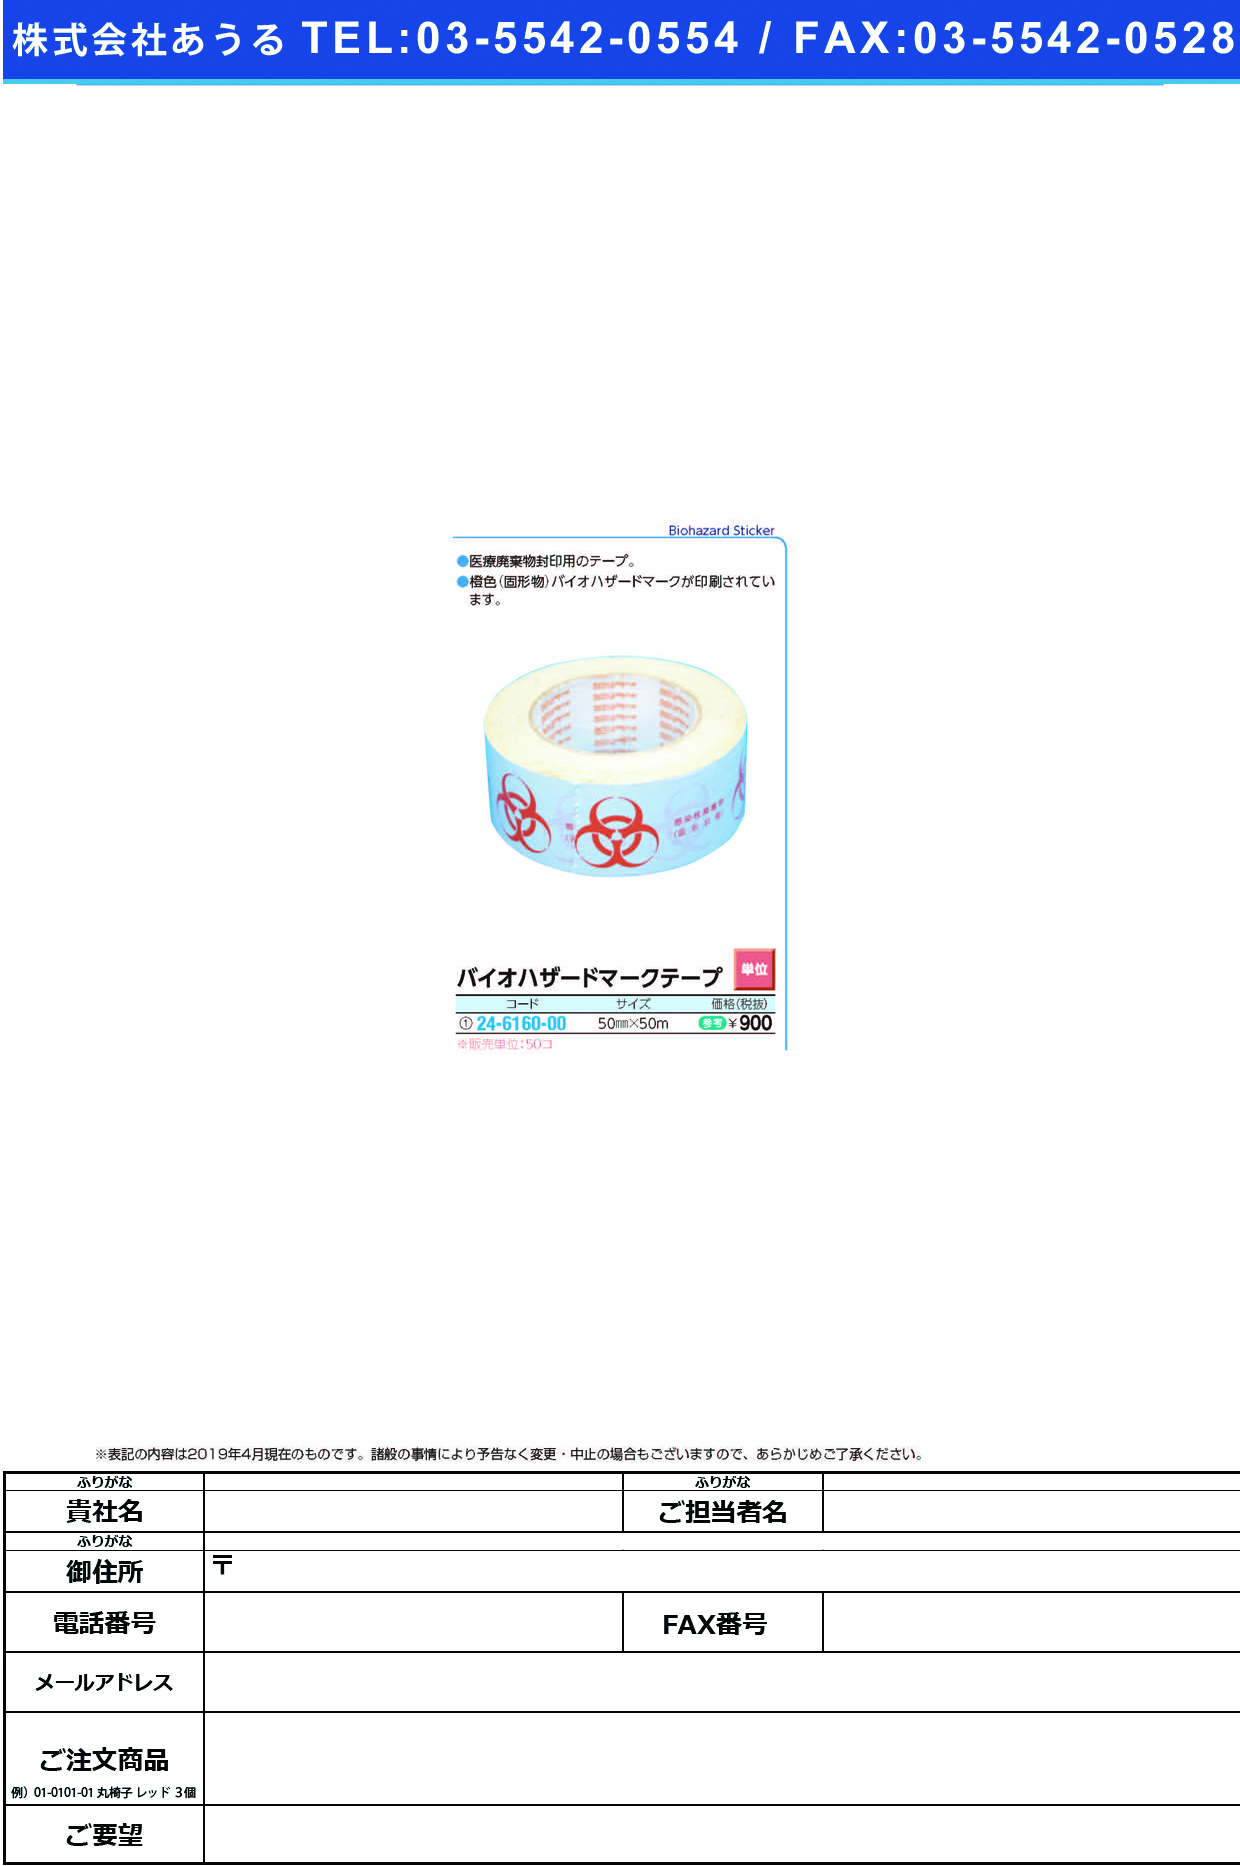 (24-6160-00)バイオハザードマークテープ 50MMX5M ﾊﾞｲｵﾊｻﾞｰﾄﾞﾏｰｸﾃｰﾌﾟ【50巻単位】【2019年カタログ商品】